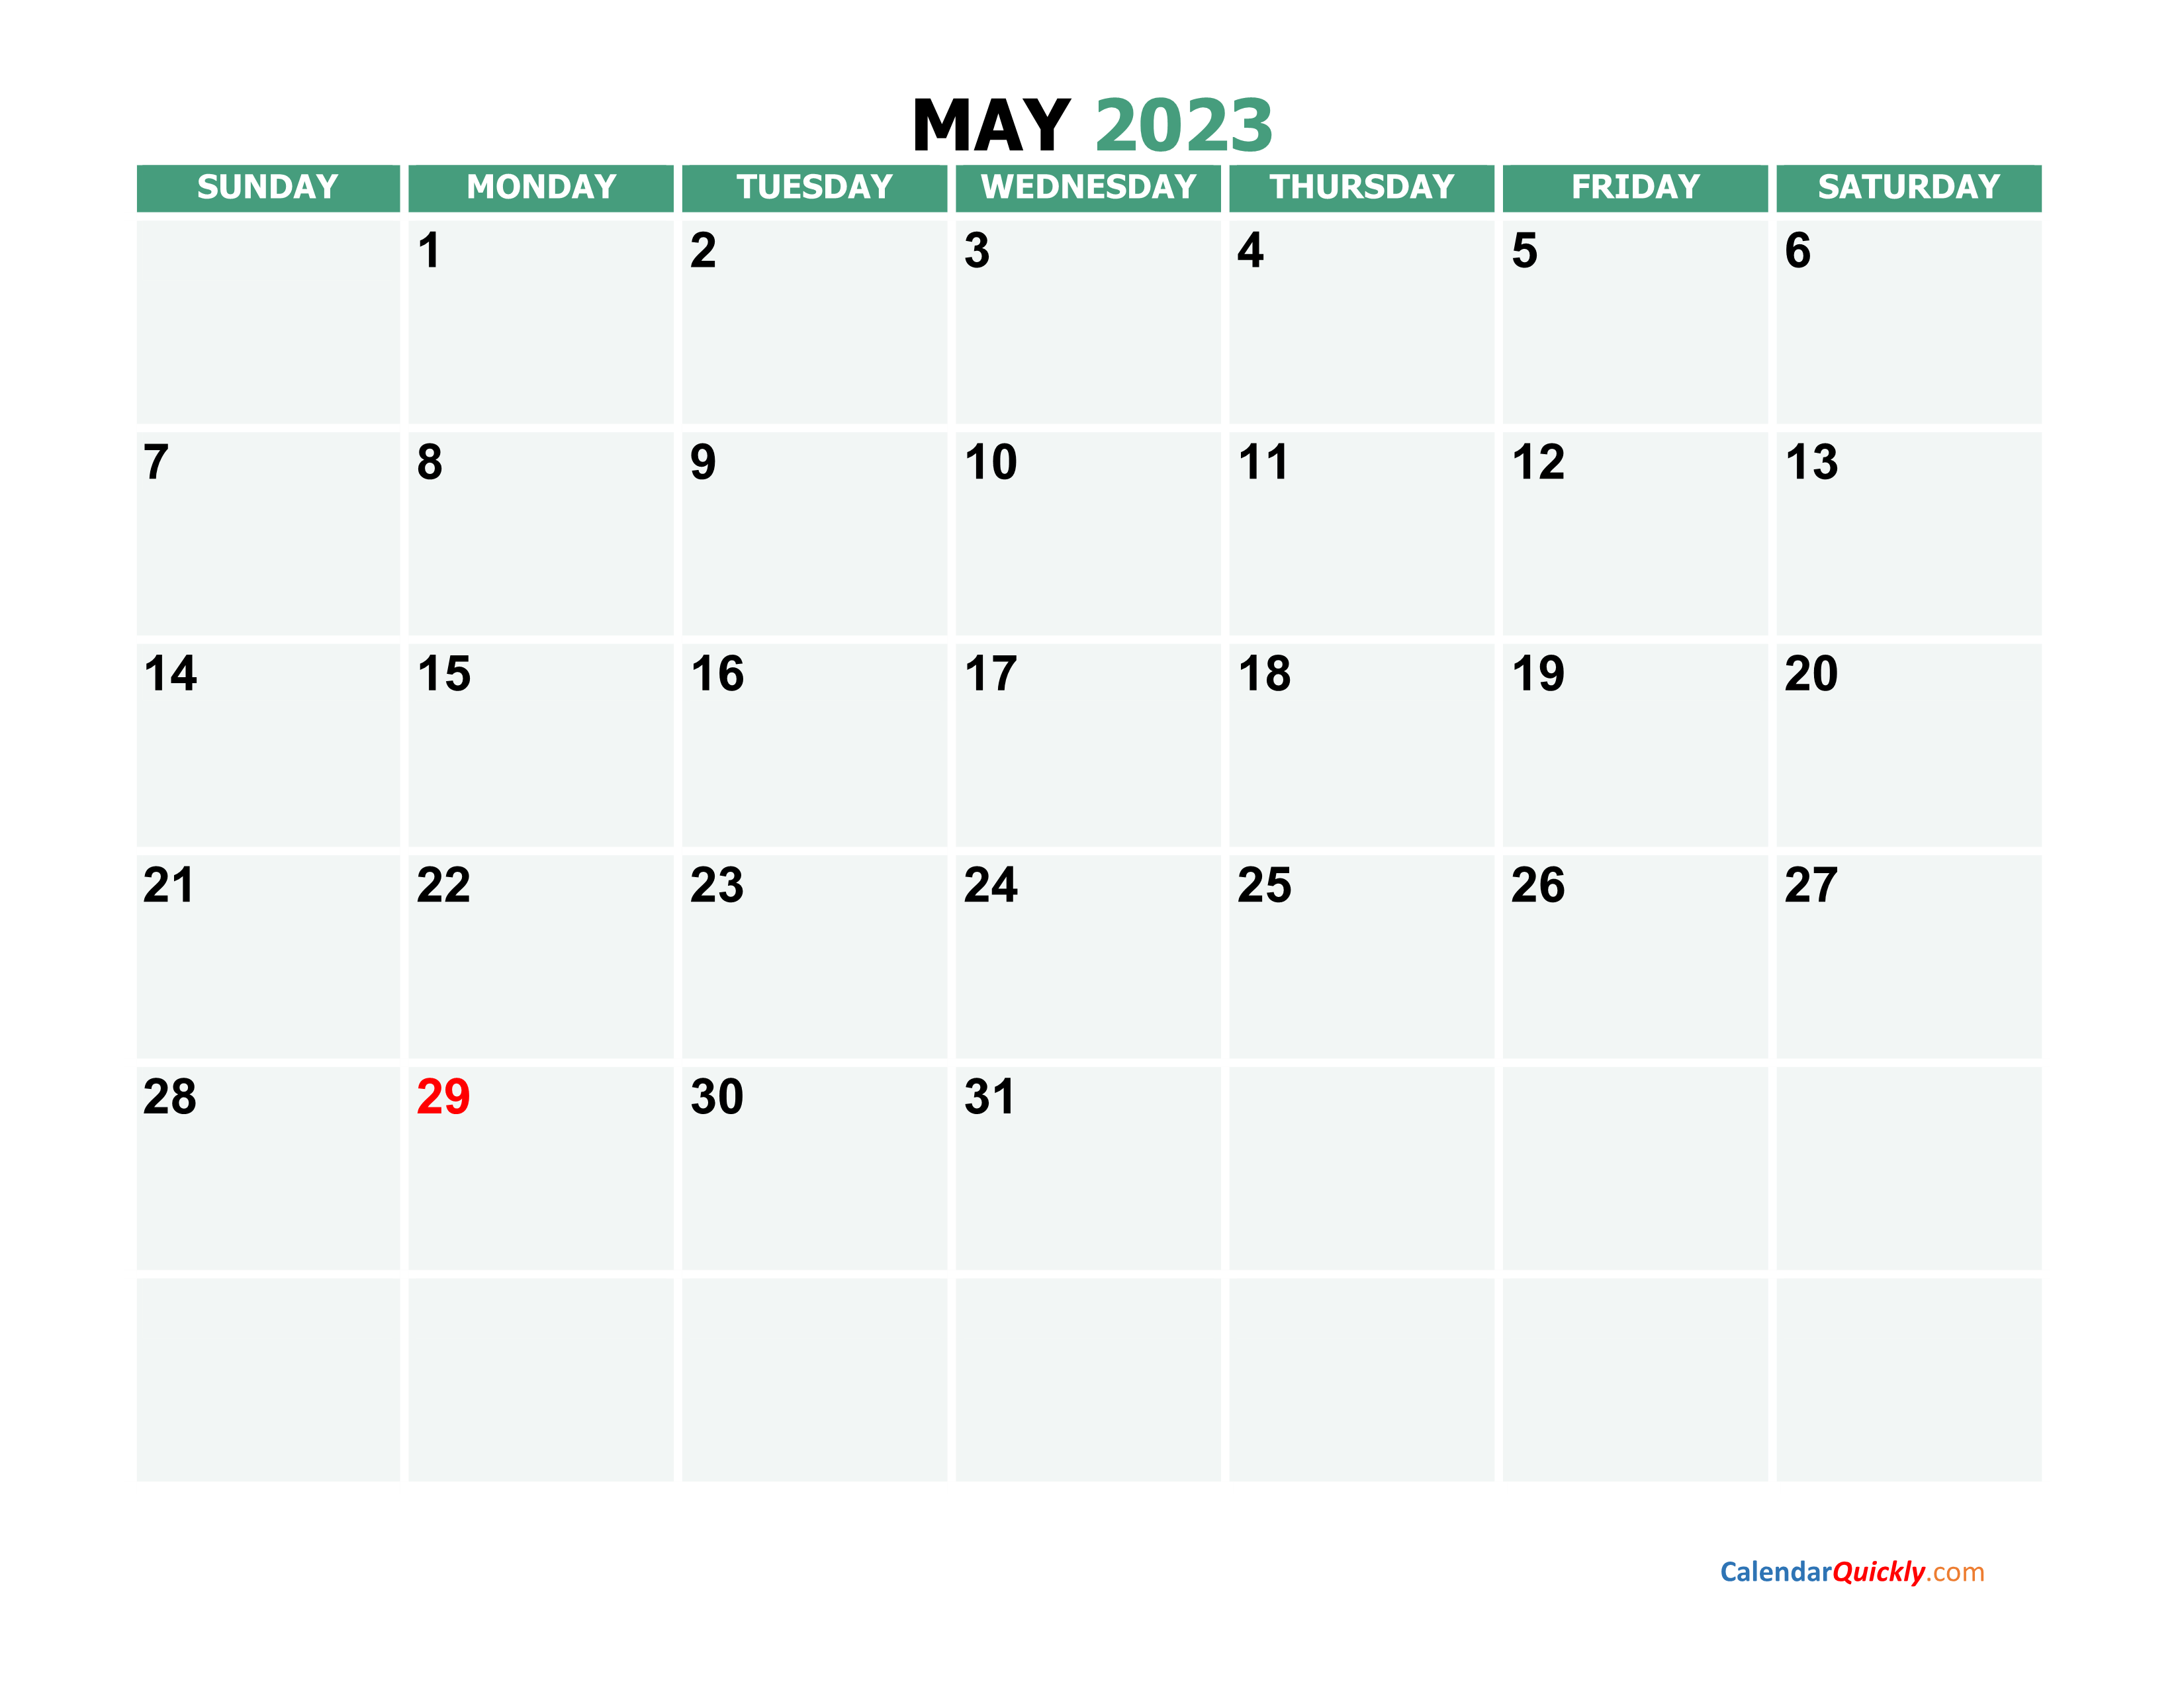 May 2023 Calendars | Calendar Quickly